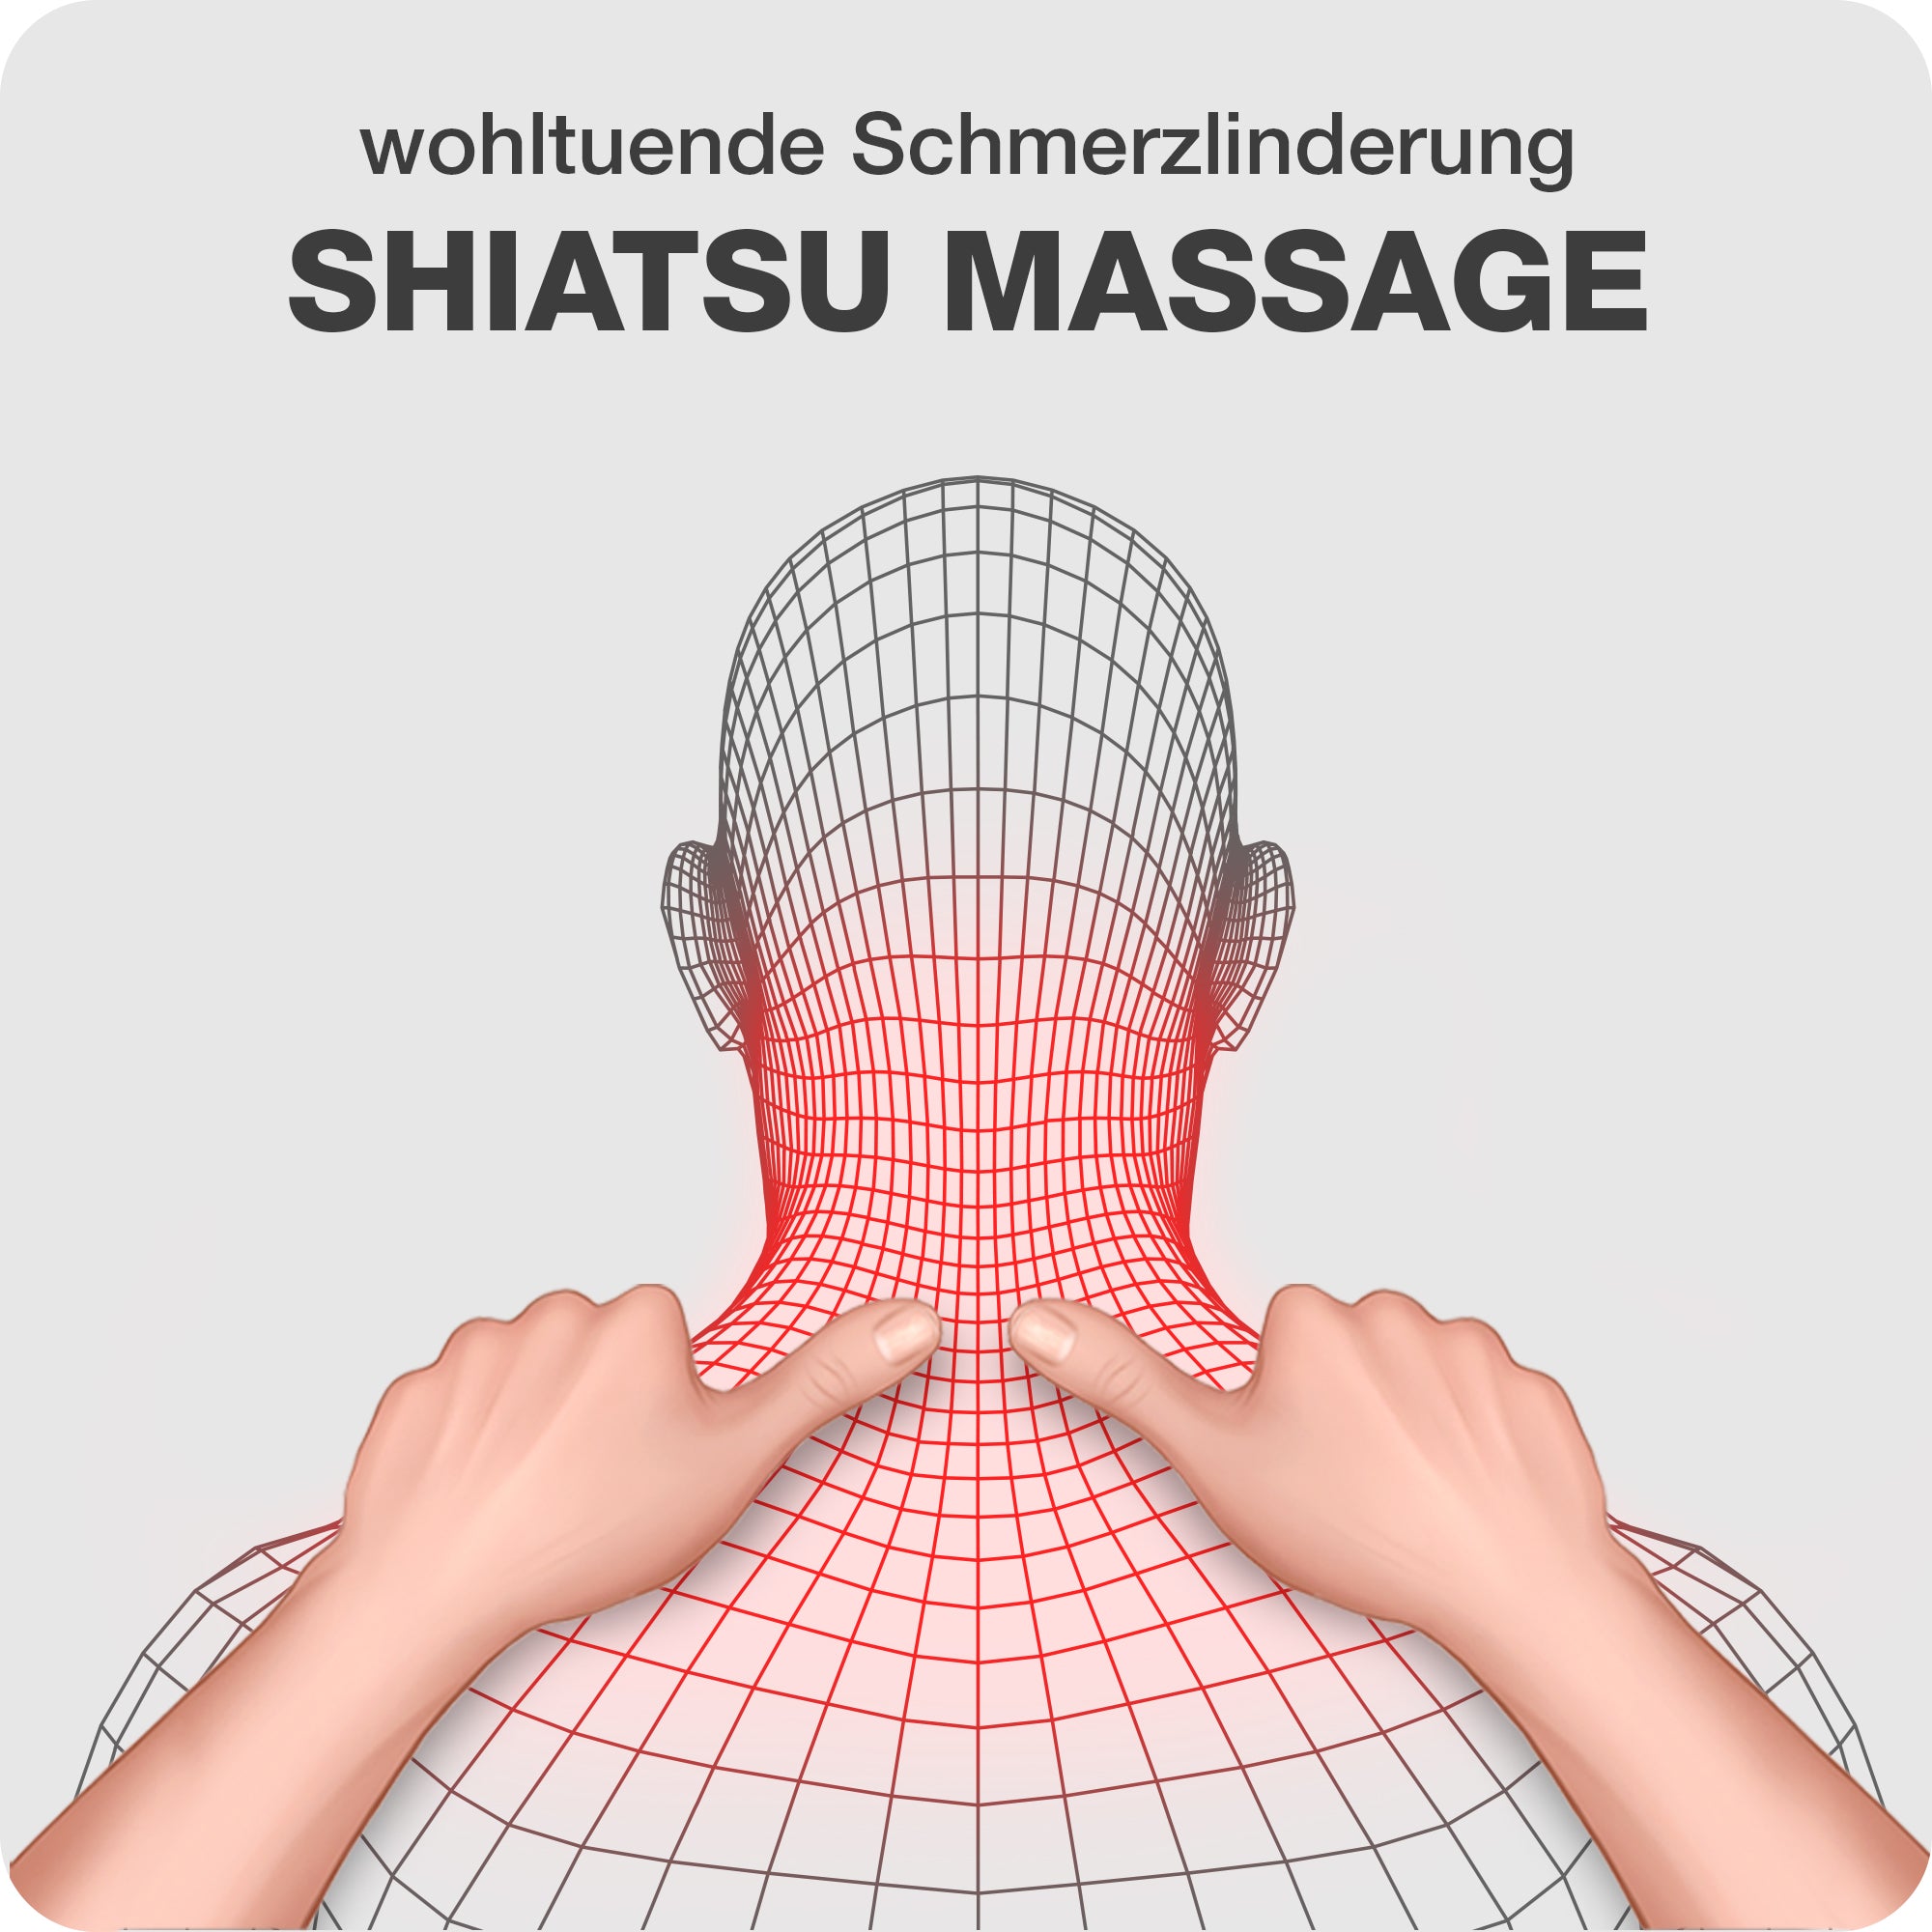 2 in 1 Premium Schwarz: Vibrationsmassage